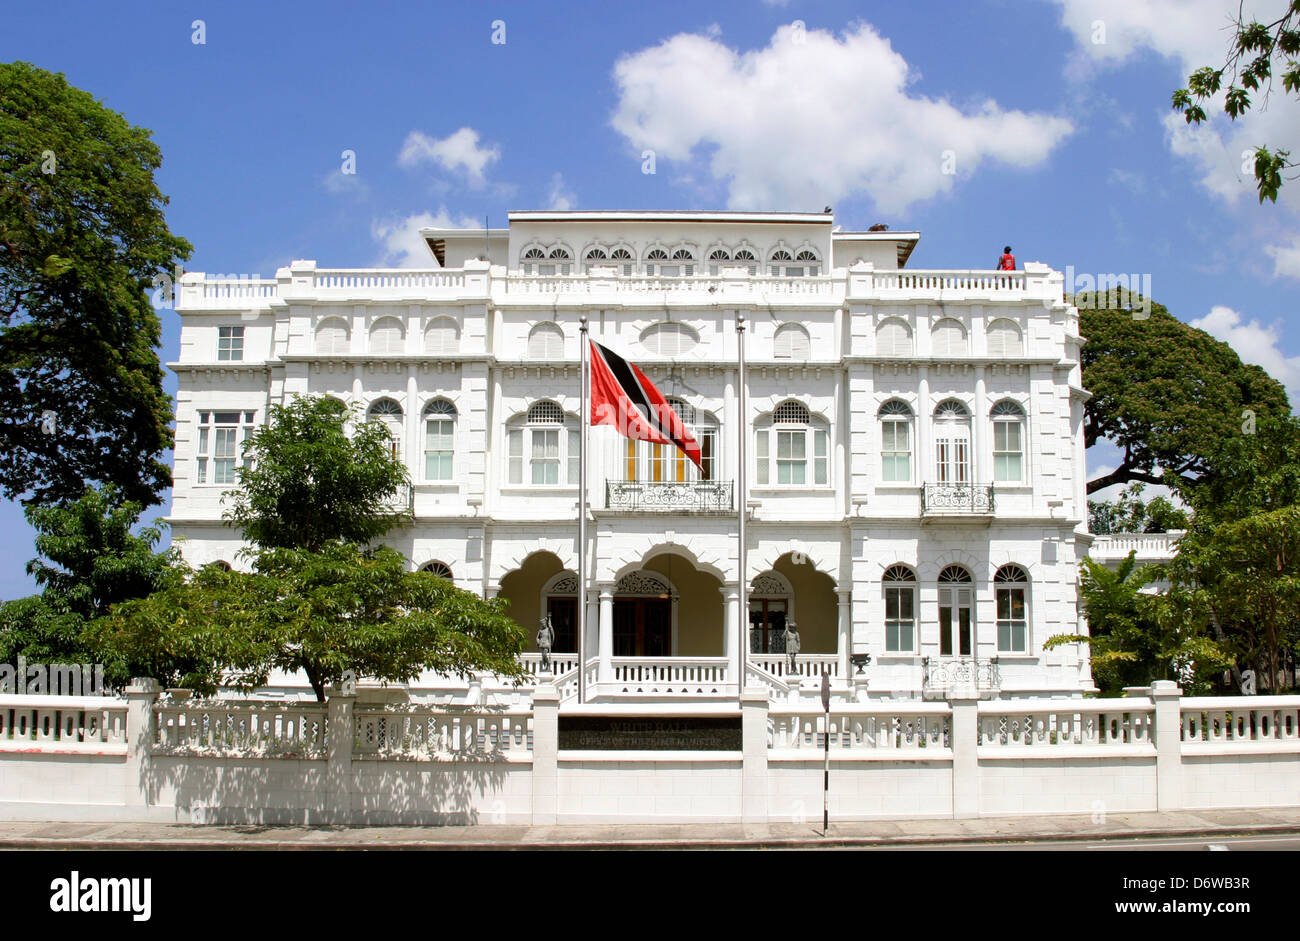 Trinidad and Tobago, Trinidad, Port of Spain, Savannah, Magnificent Seven Stock Photo